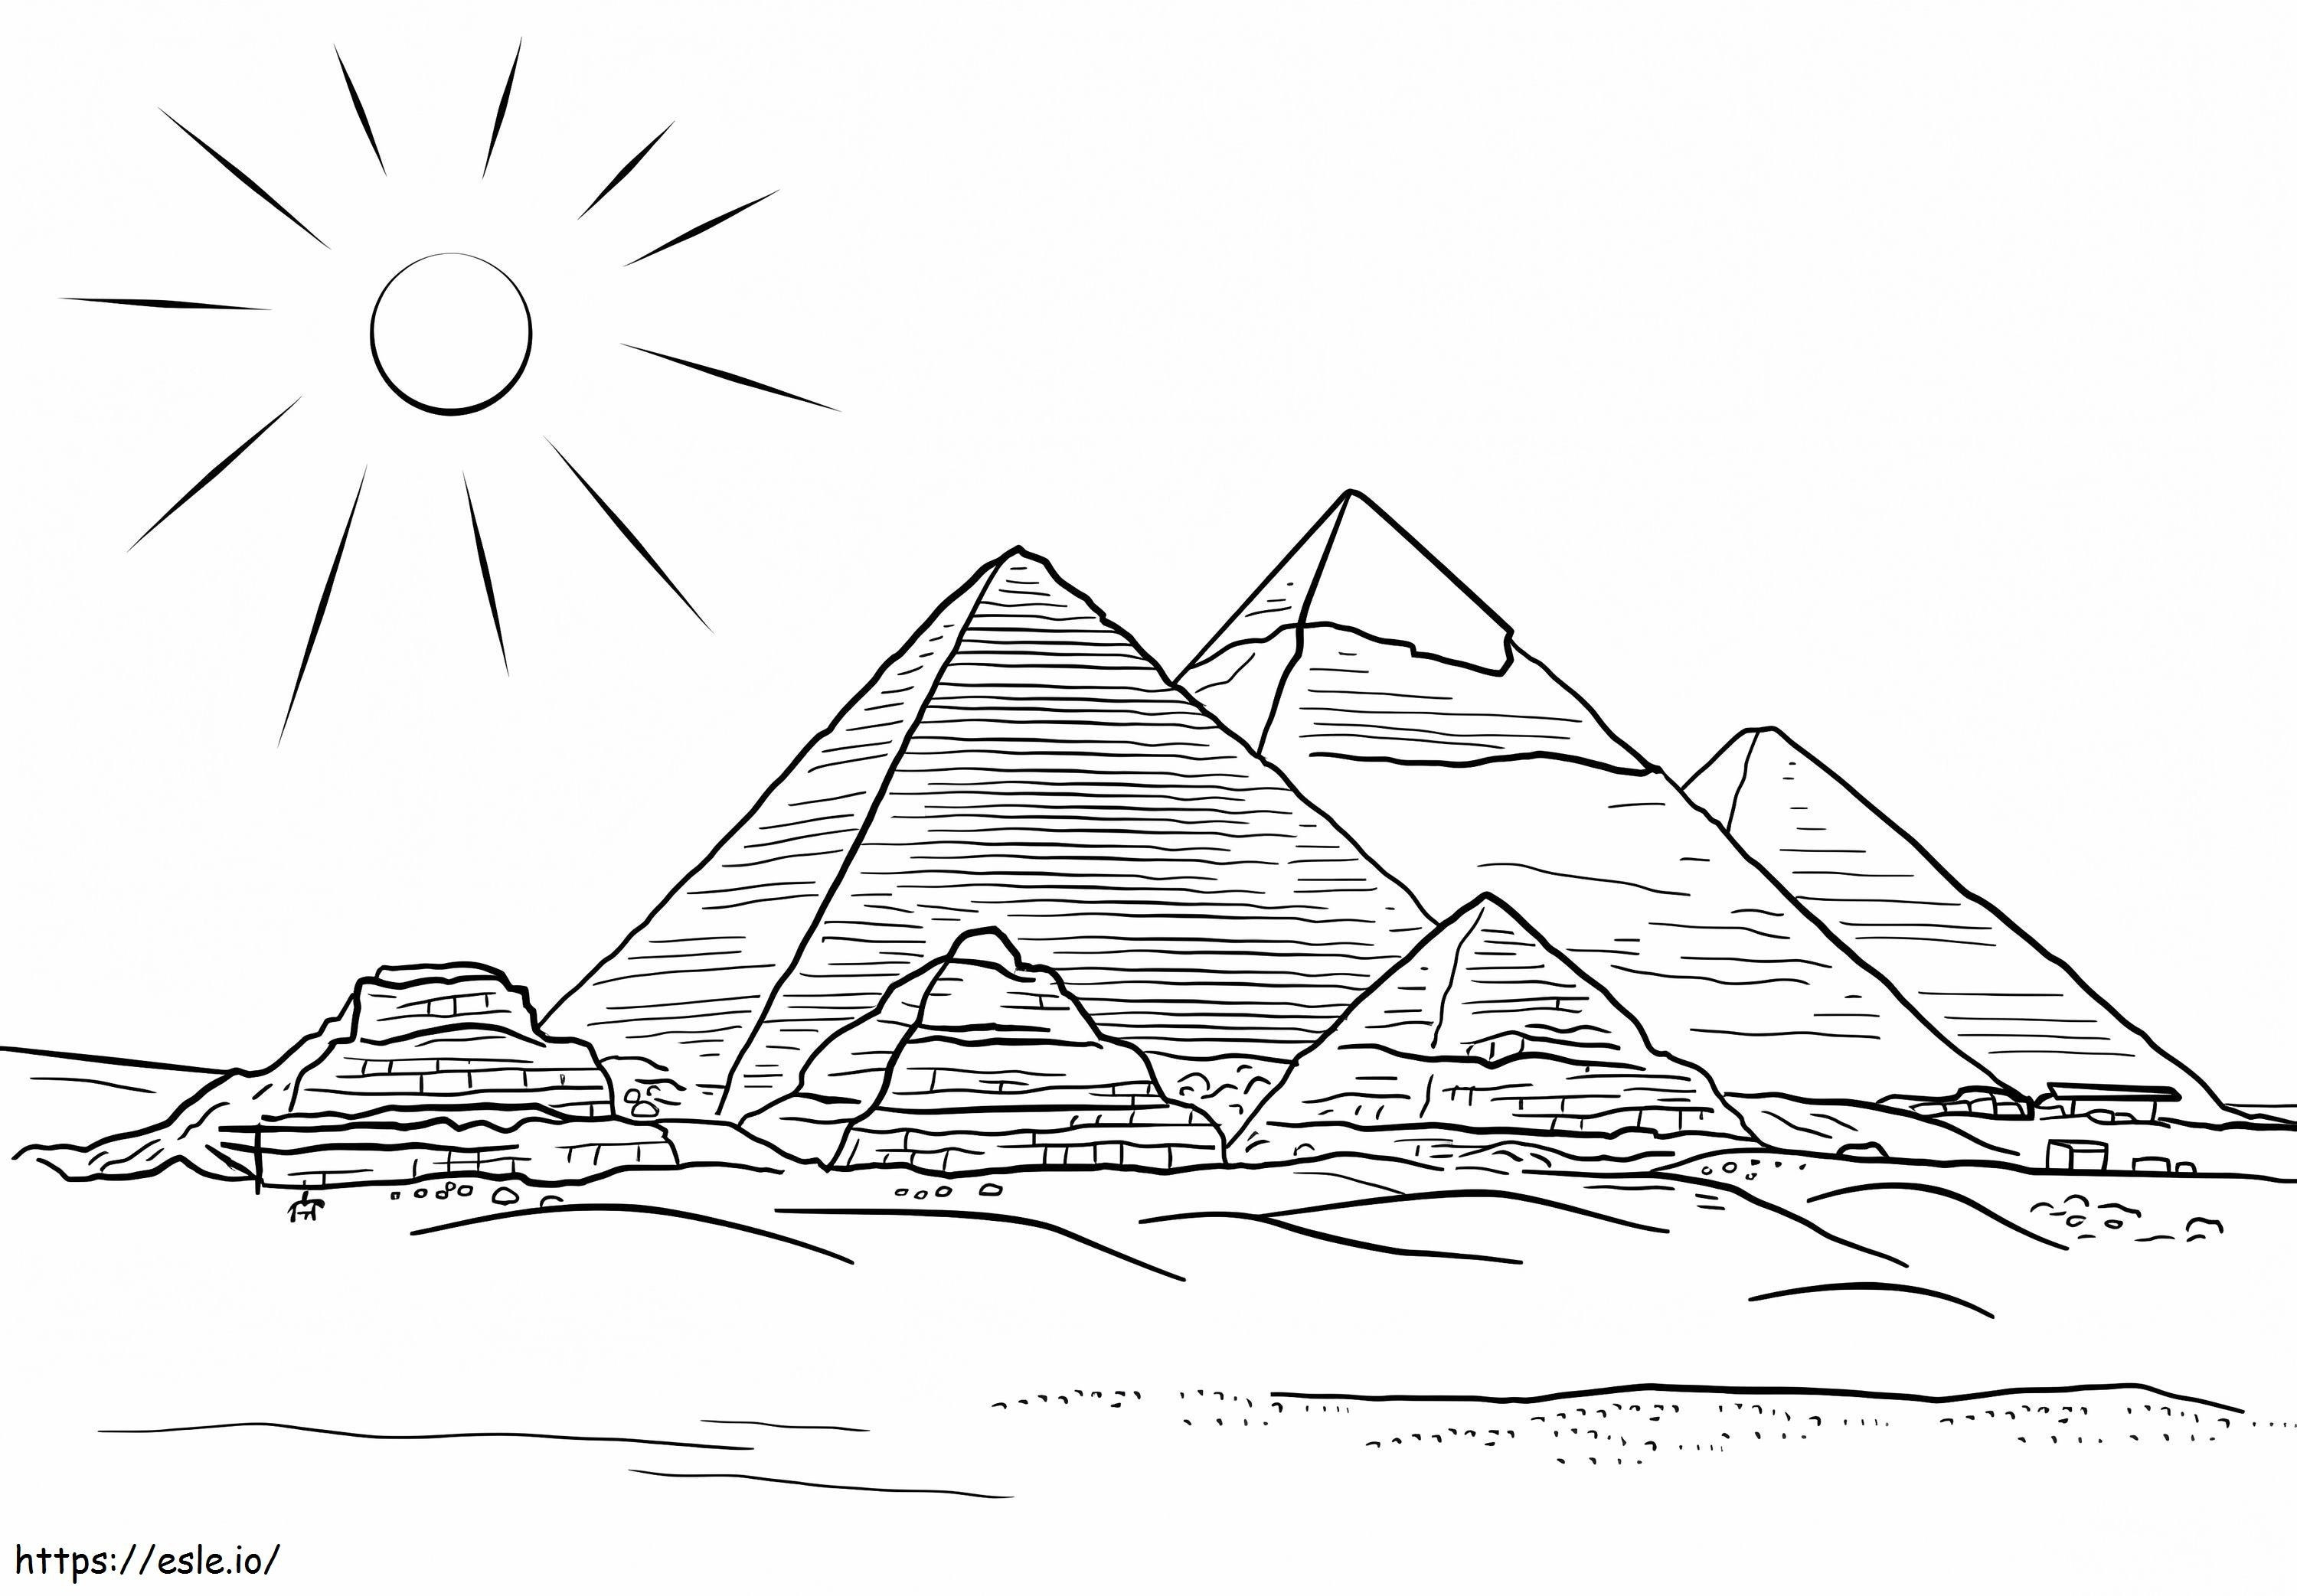 Giza Pyramids coloring page